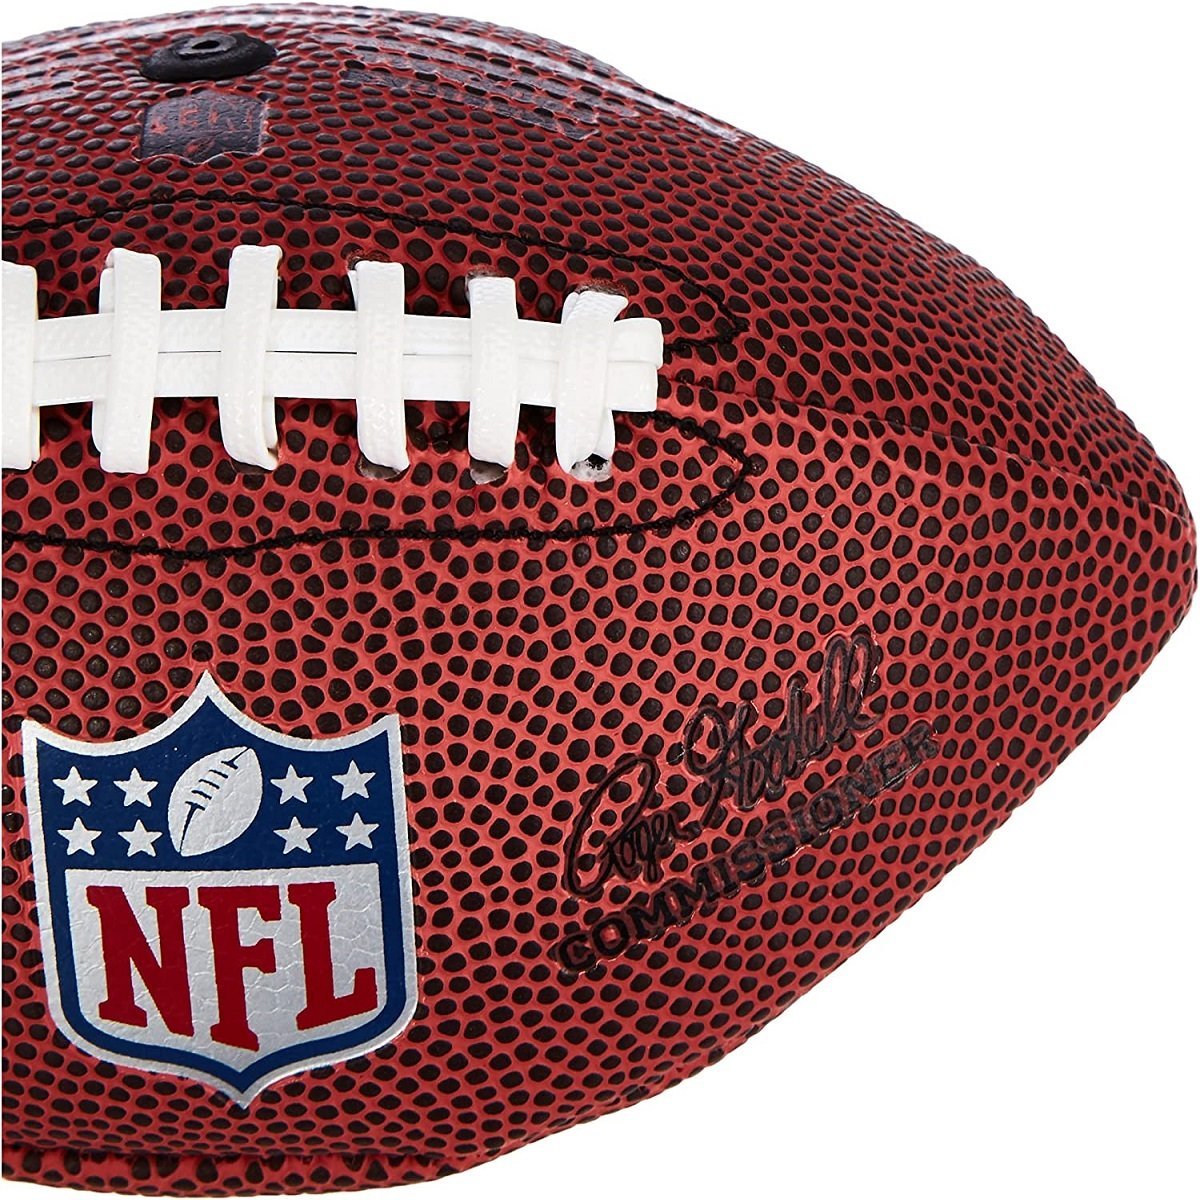 Lopta Wilson NFL Micro Football - hnedá